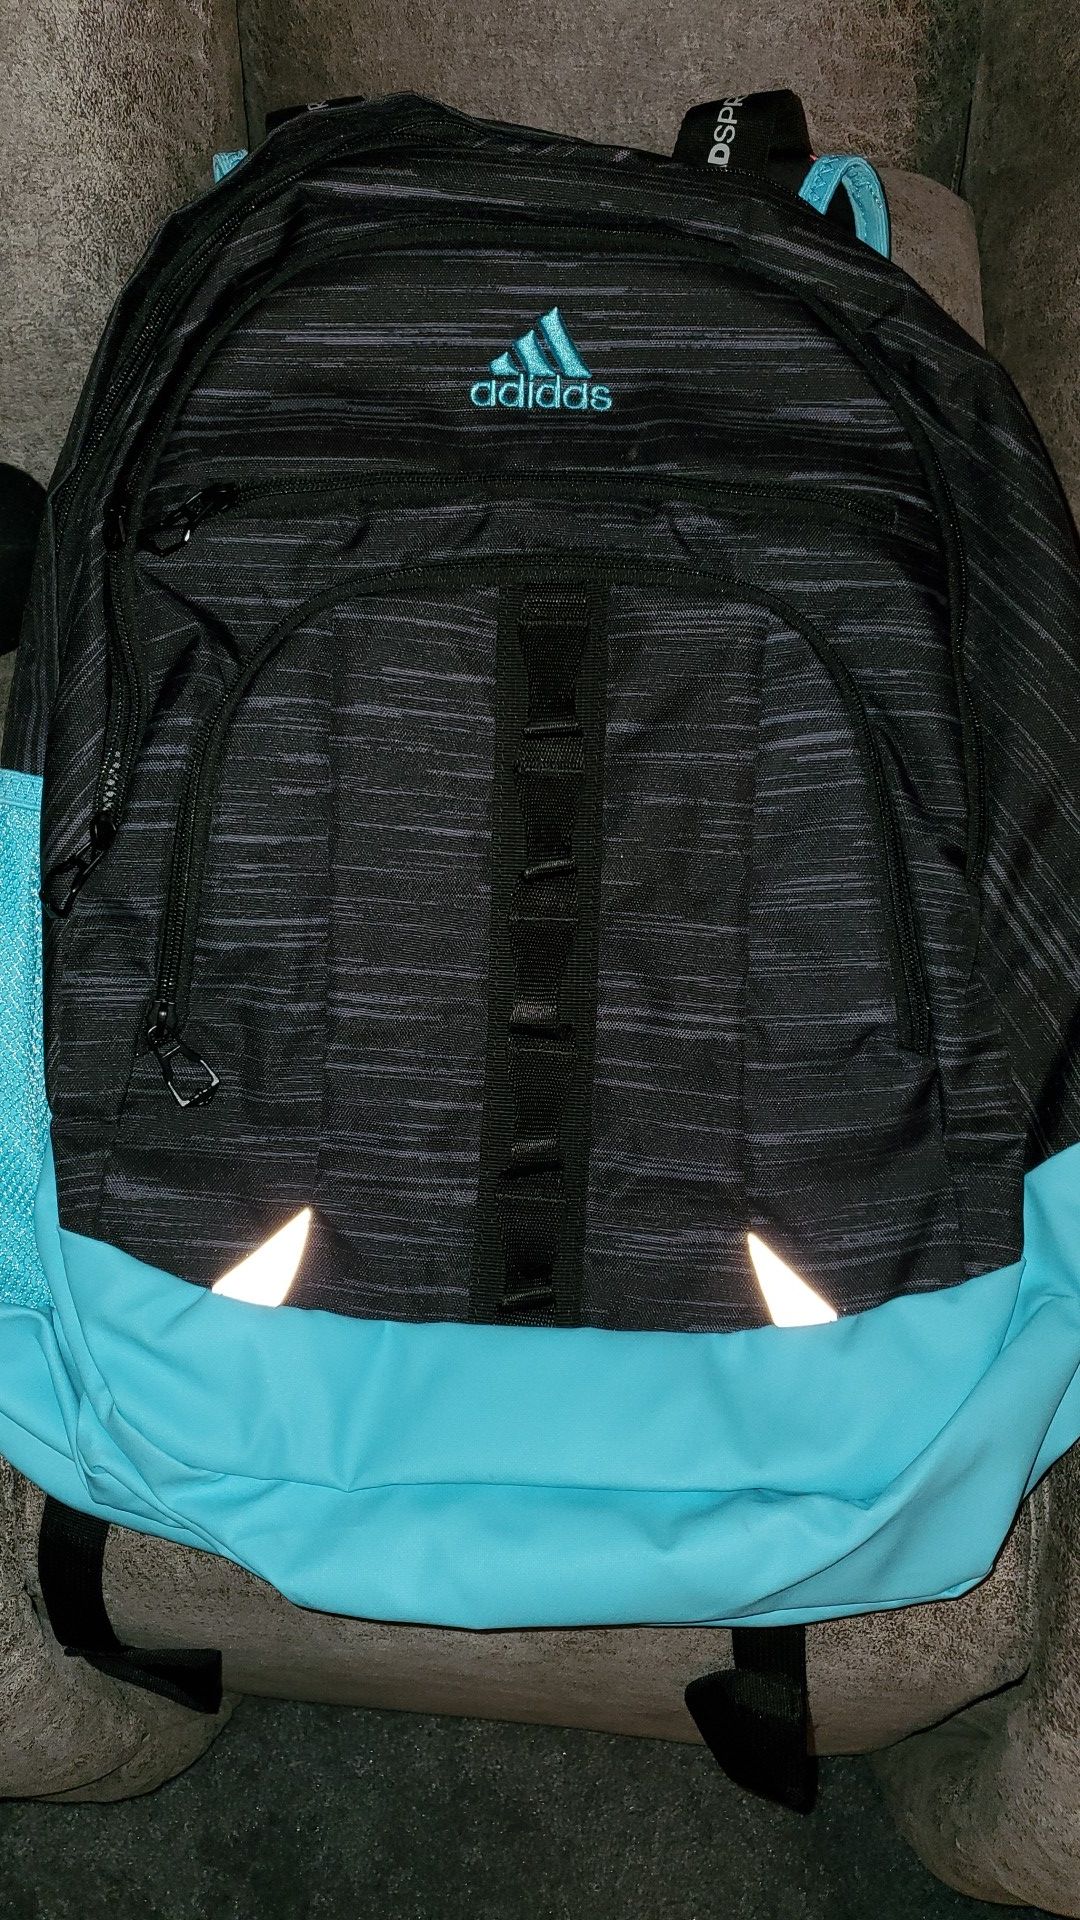 Large Adidas backpack